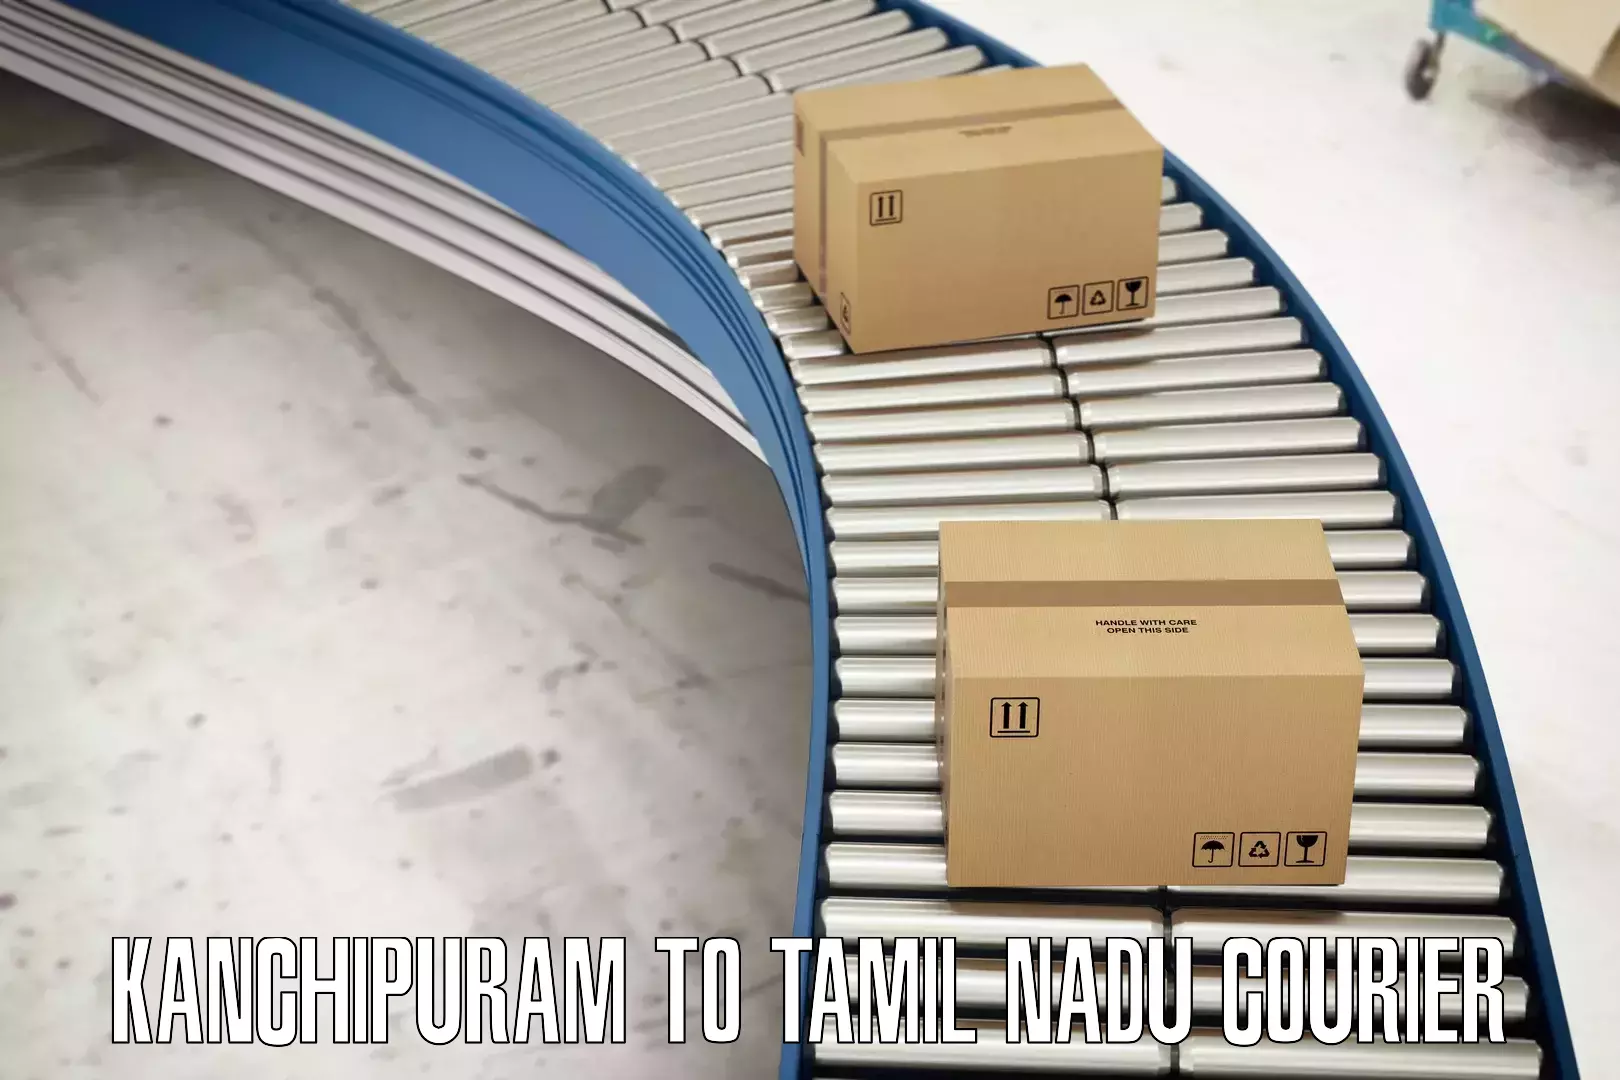 Nationwide parcel services Kanchipuram to Tamil Nadu